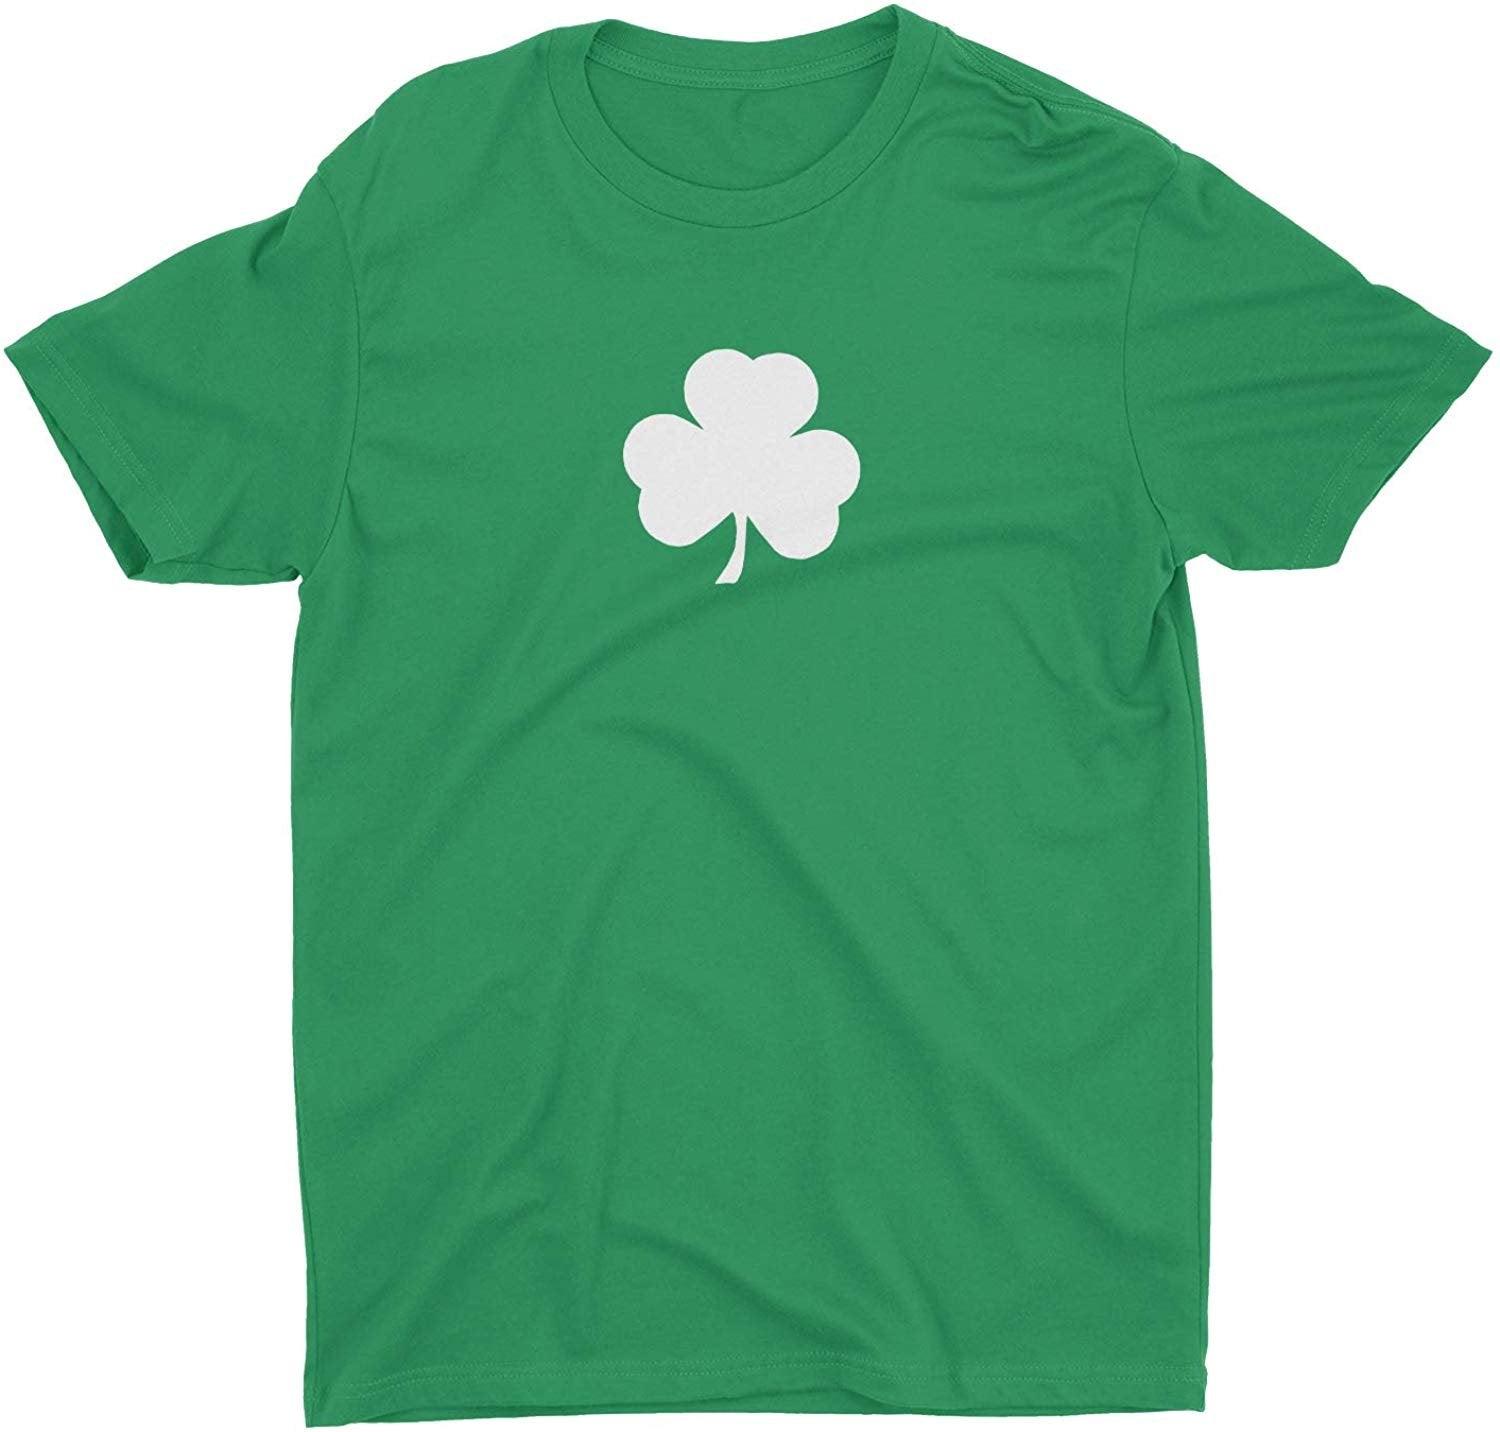 T-shirt pour enfants Shamrock (petit design uni, vert irlandais)